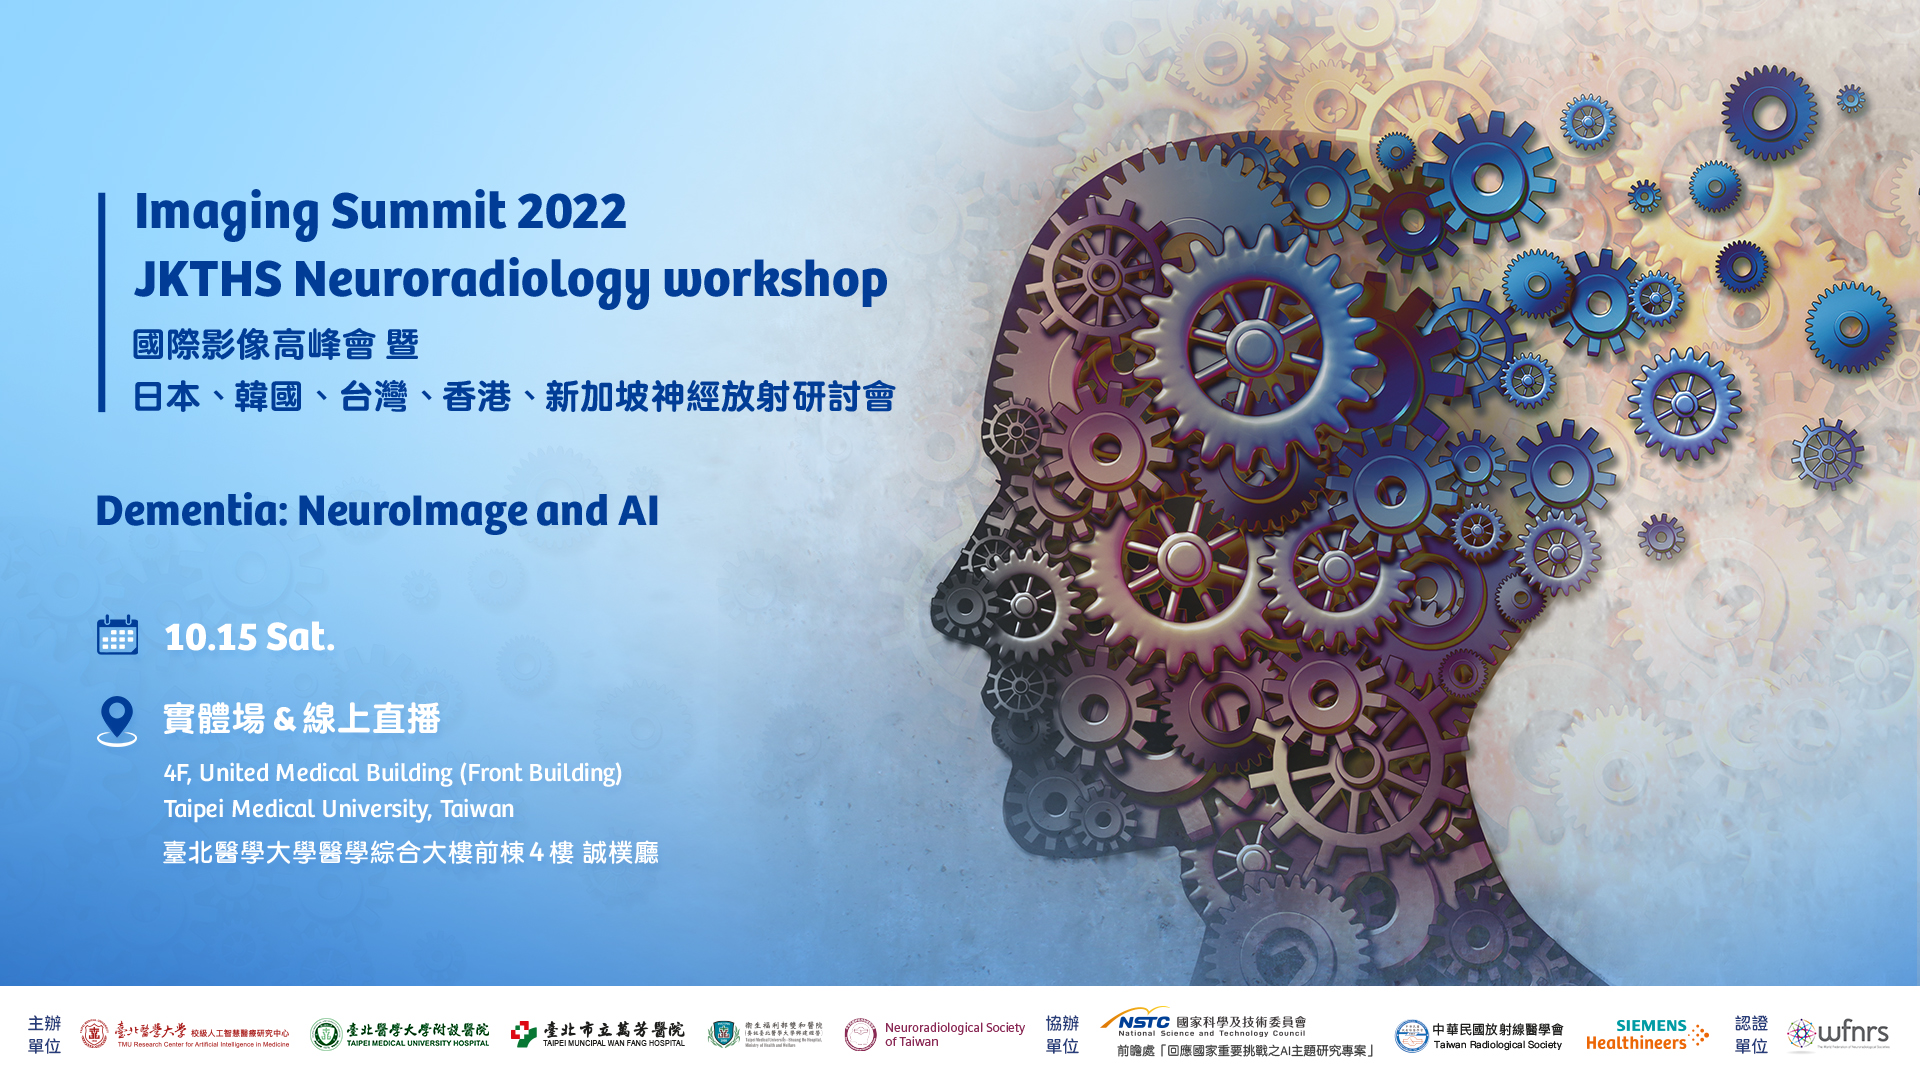 2022國際影像高峰會暨日本、韓國、台灣、香港、新加坡神經放射研討會